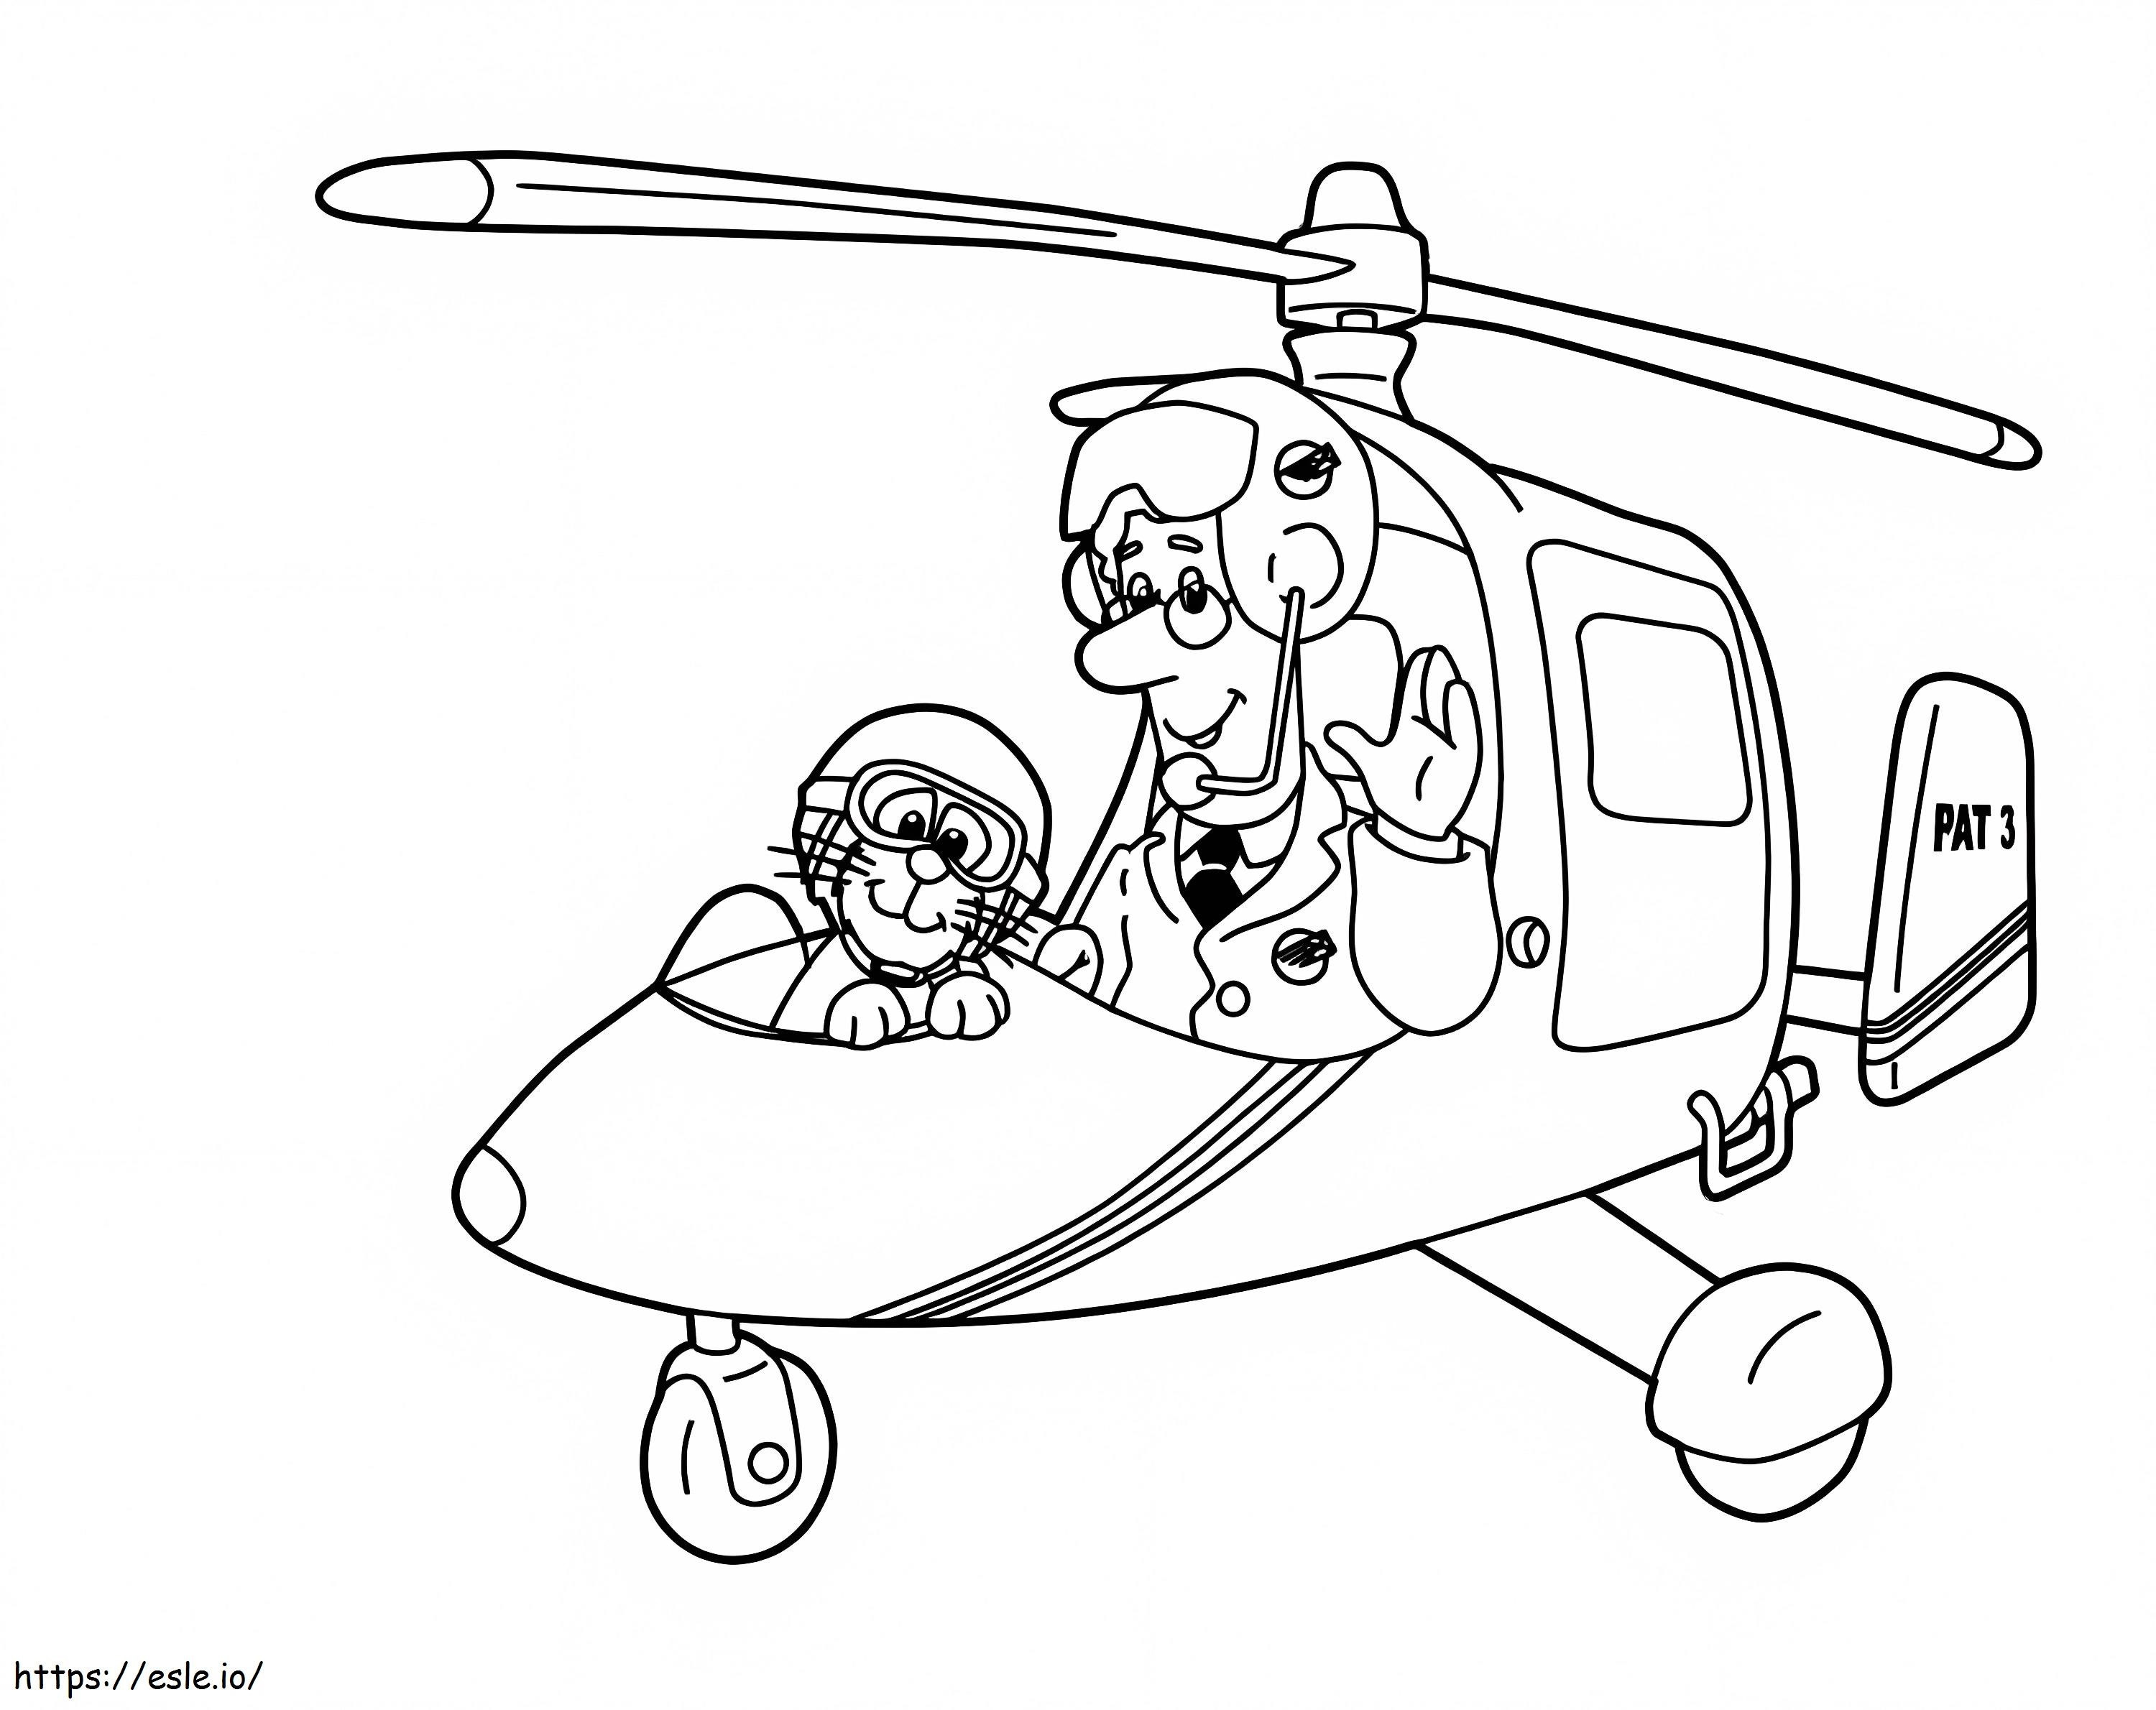 Postbode Pat en zijn kat in helikopter kleurplaat kleurplaat